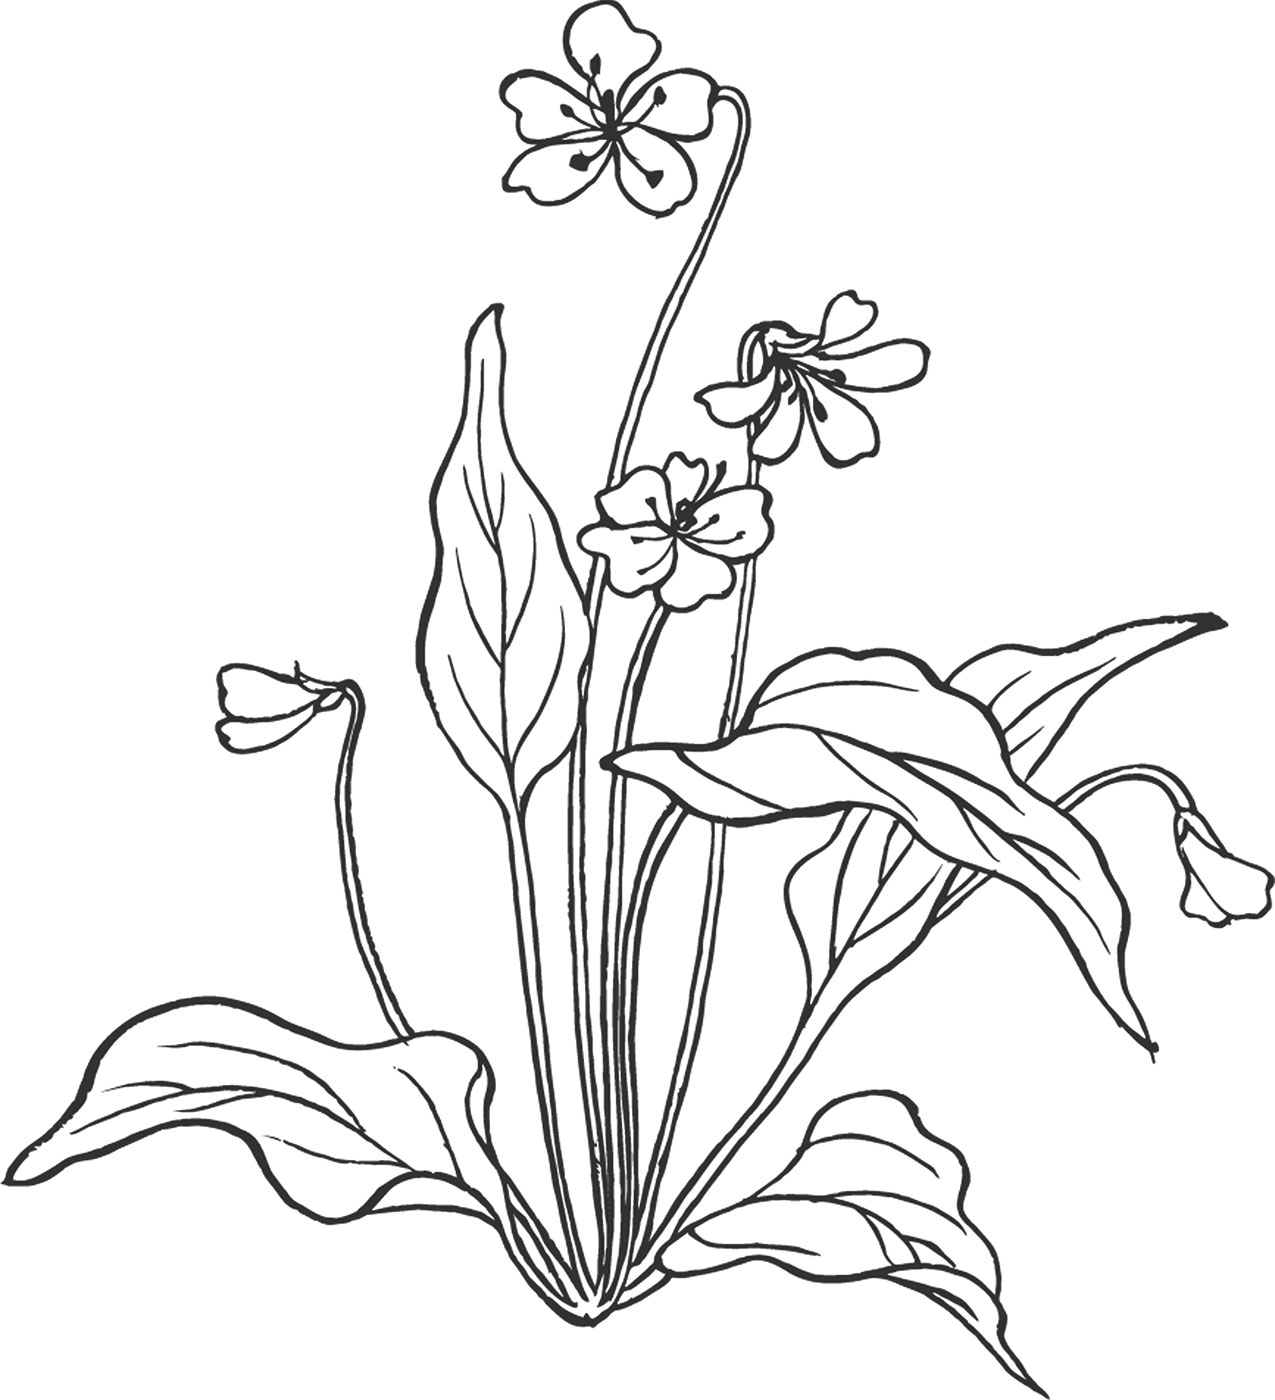 白黒の花のイラスト-白黒・手書き風・茎葉